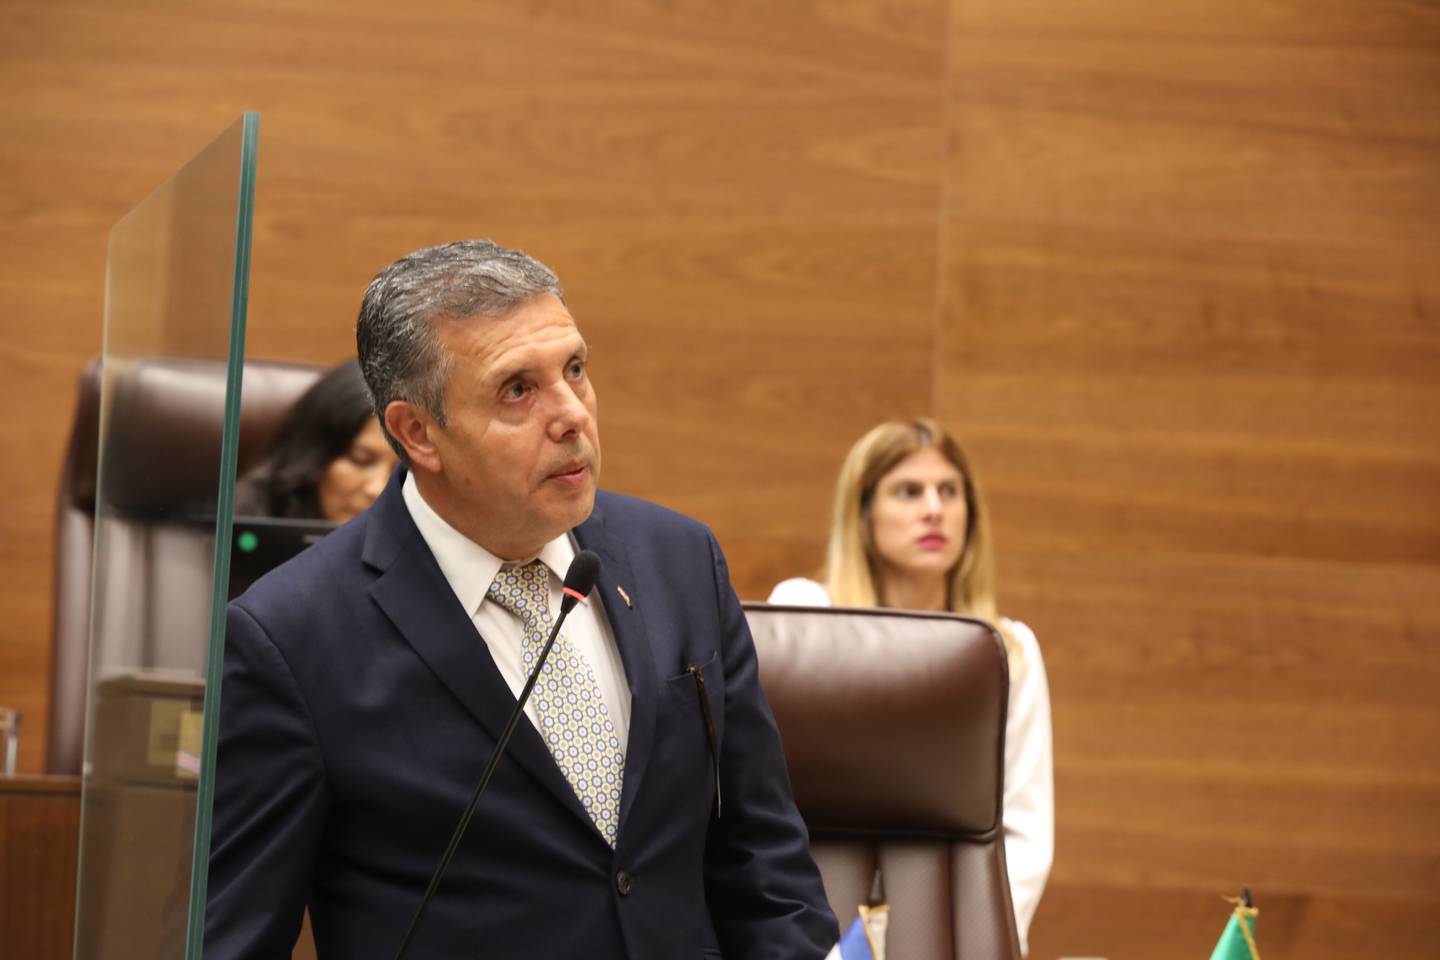 Óscar Izquierdo, jefe de fracción del PLN, preside la Comisión encargada de analizar la reforma constitucional para extraditar a costarricenses. Foto: Asamblea Legislativa